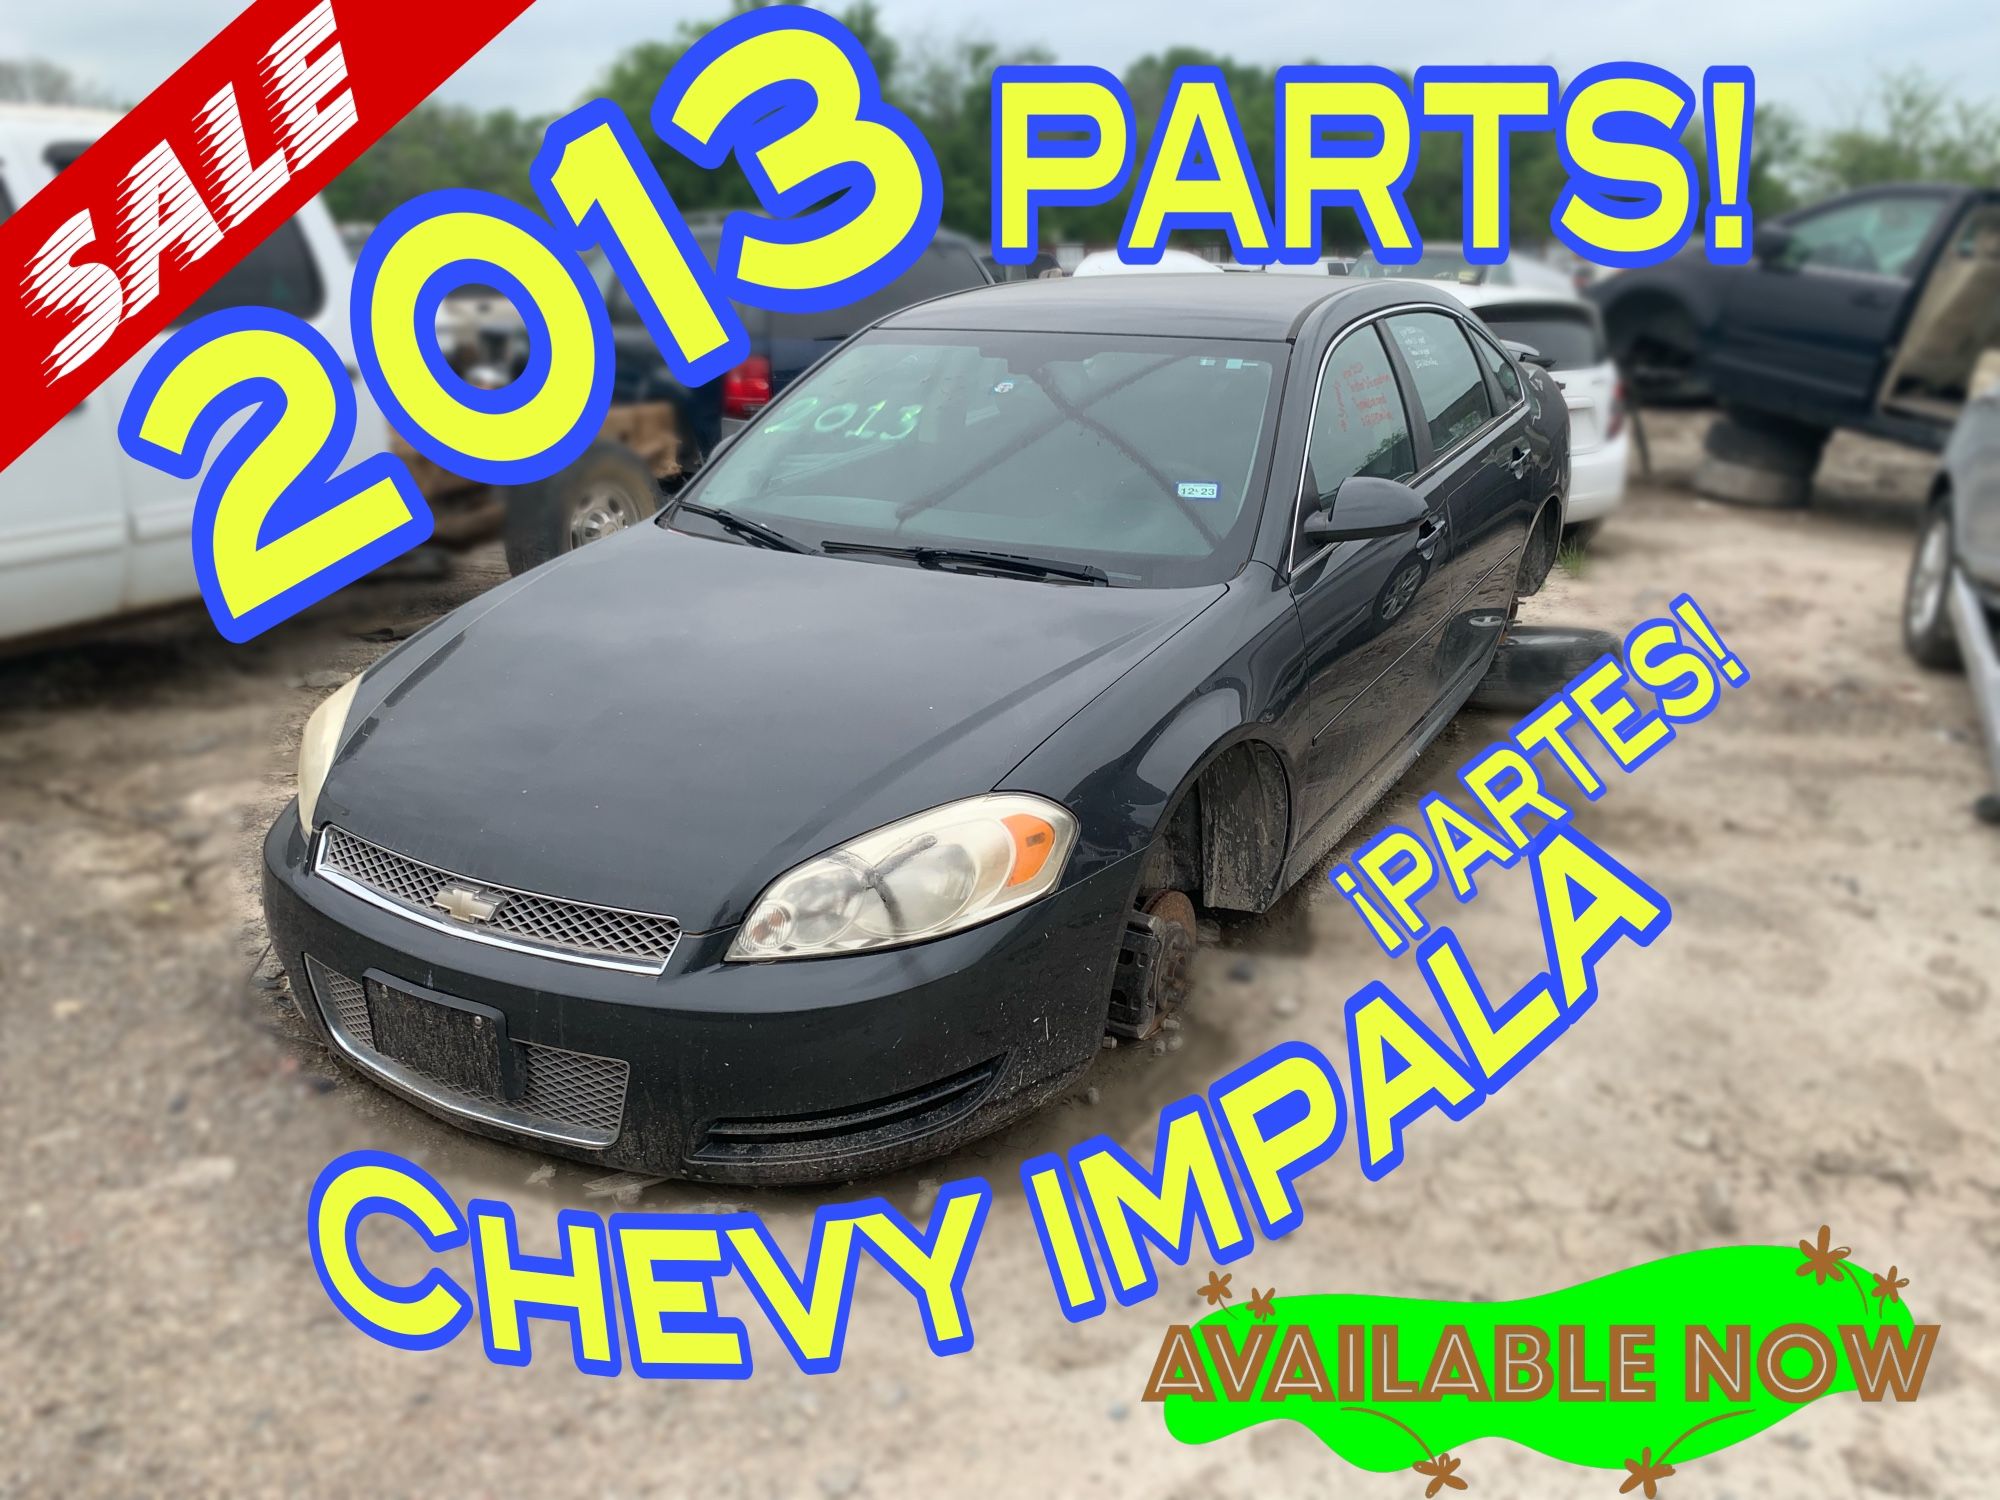 2013 Chevy Impala Parts